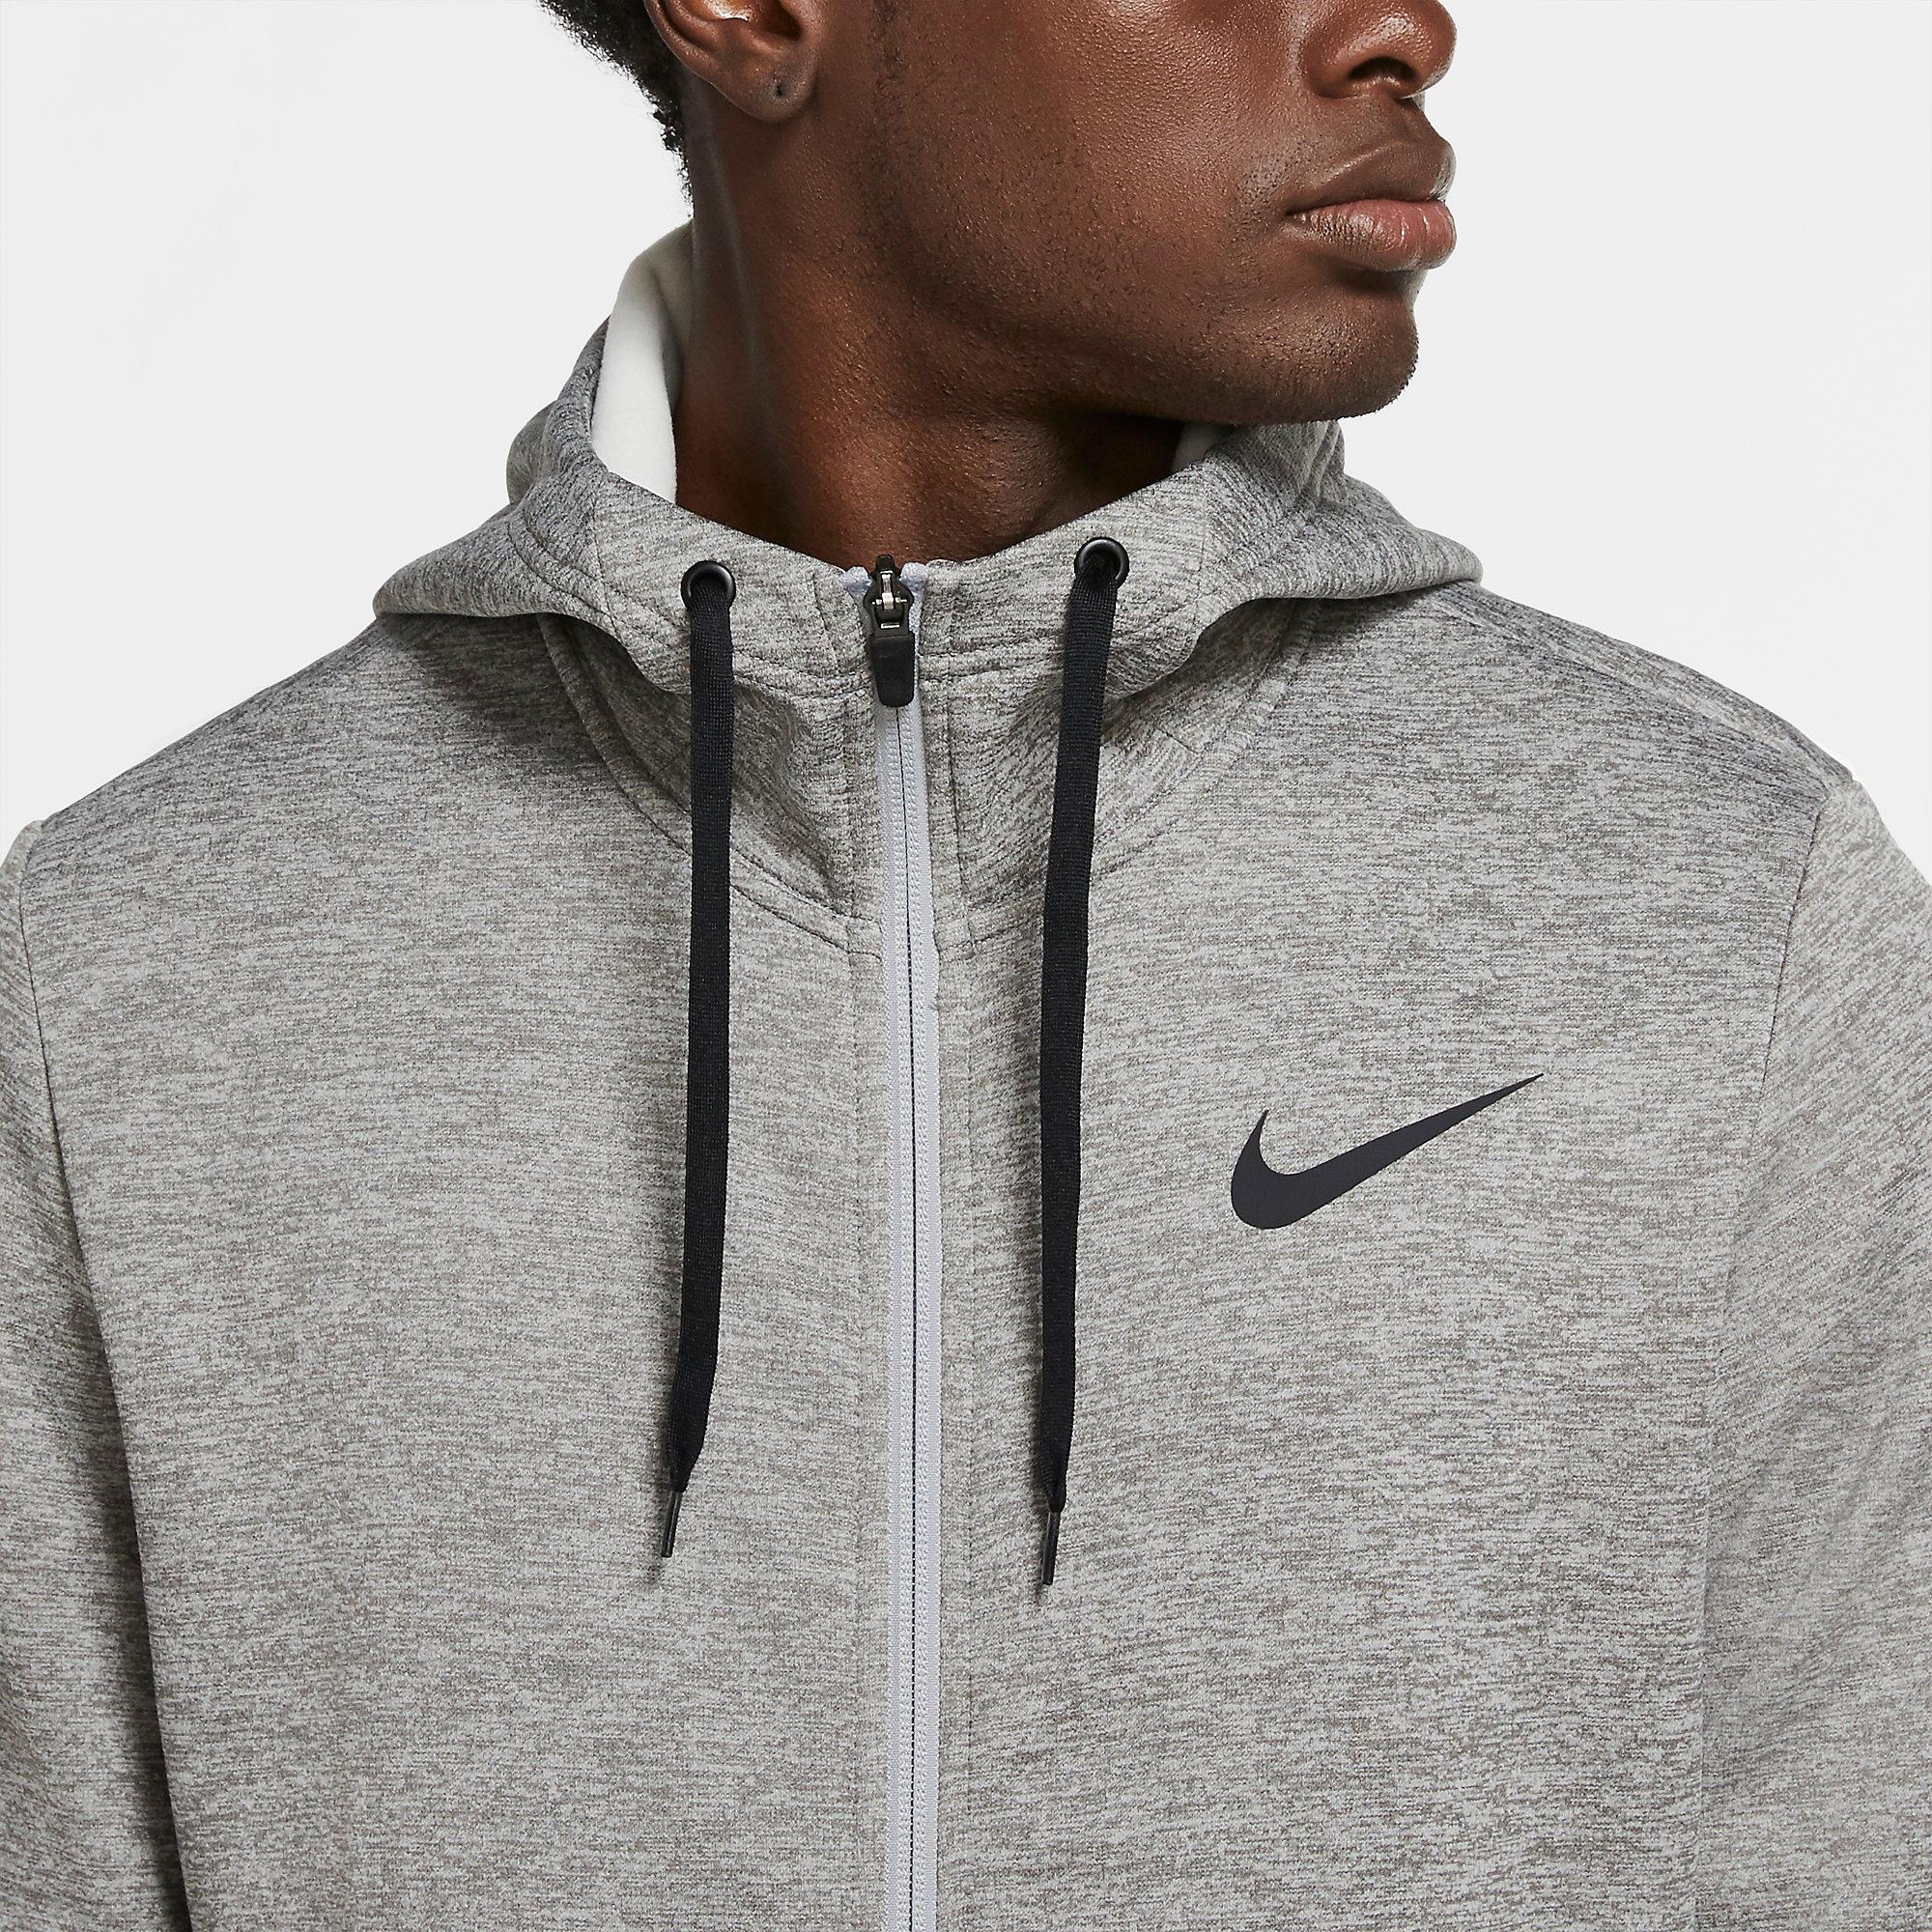 Nike Mens Full Zip Therma Hoodie - Dark Grey Heather - Tennisnuts.com